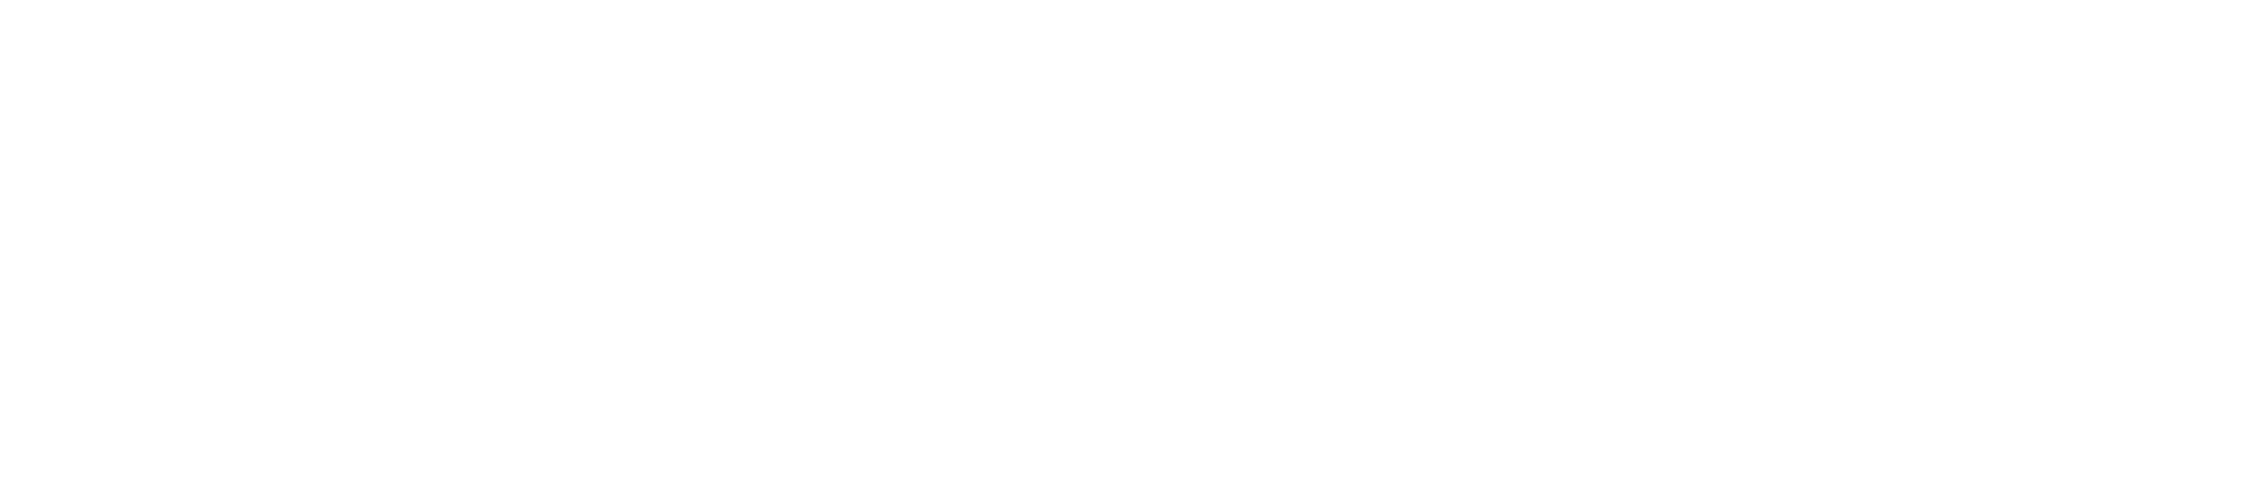 De blije merkontwikkelaar Libertas Pascal logo